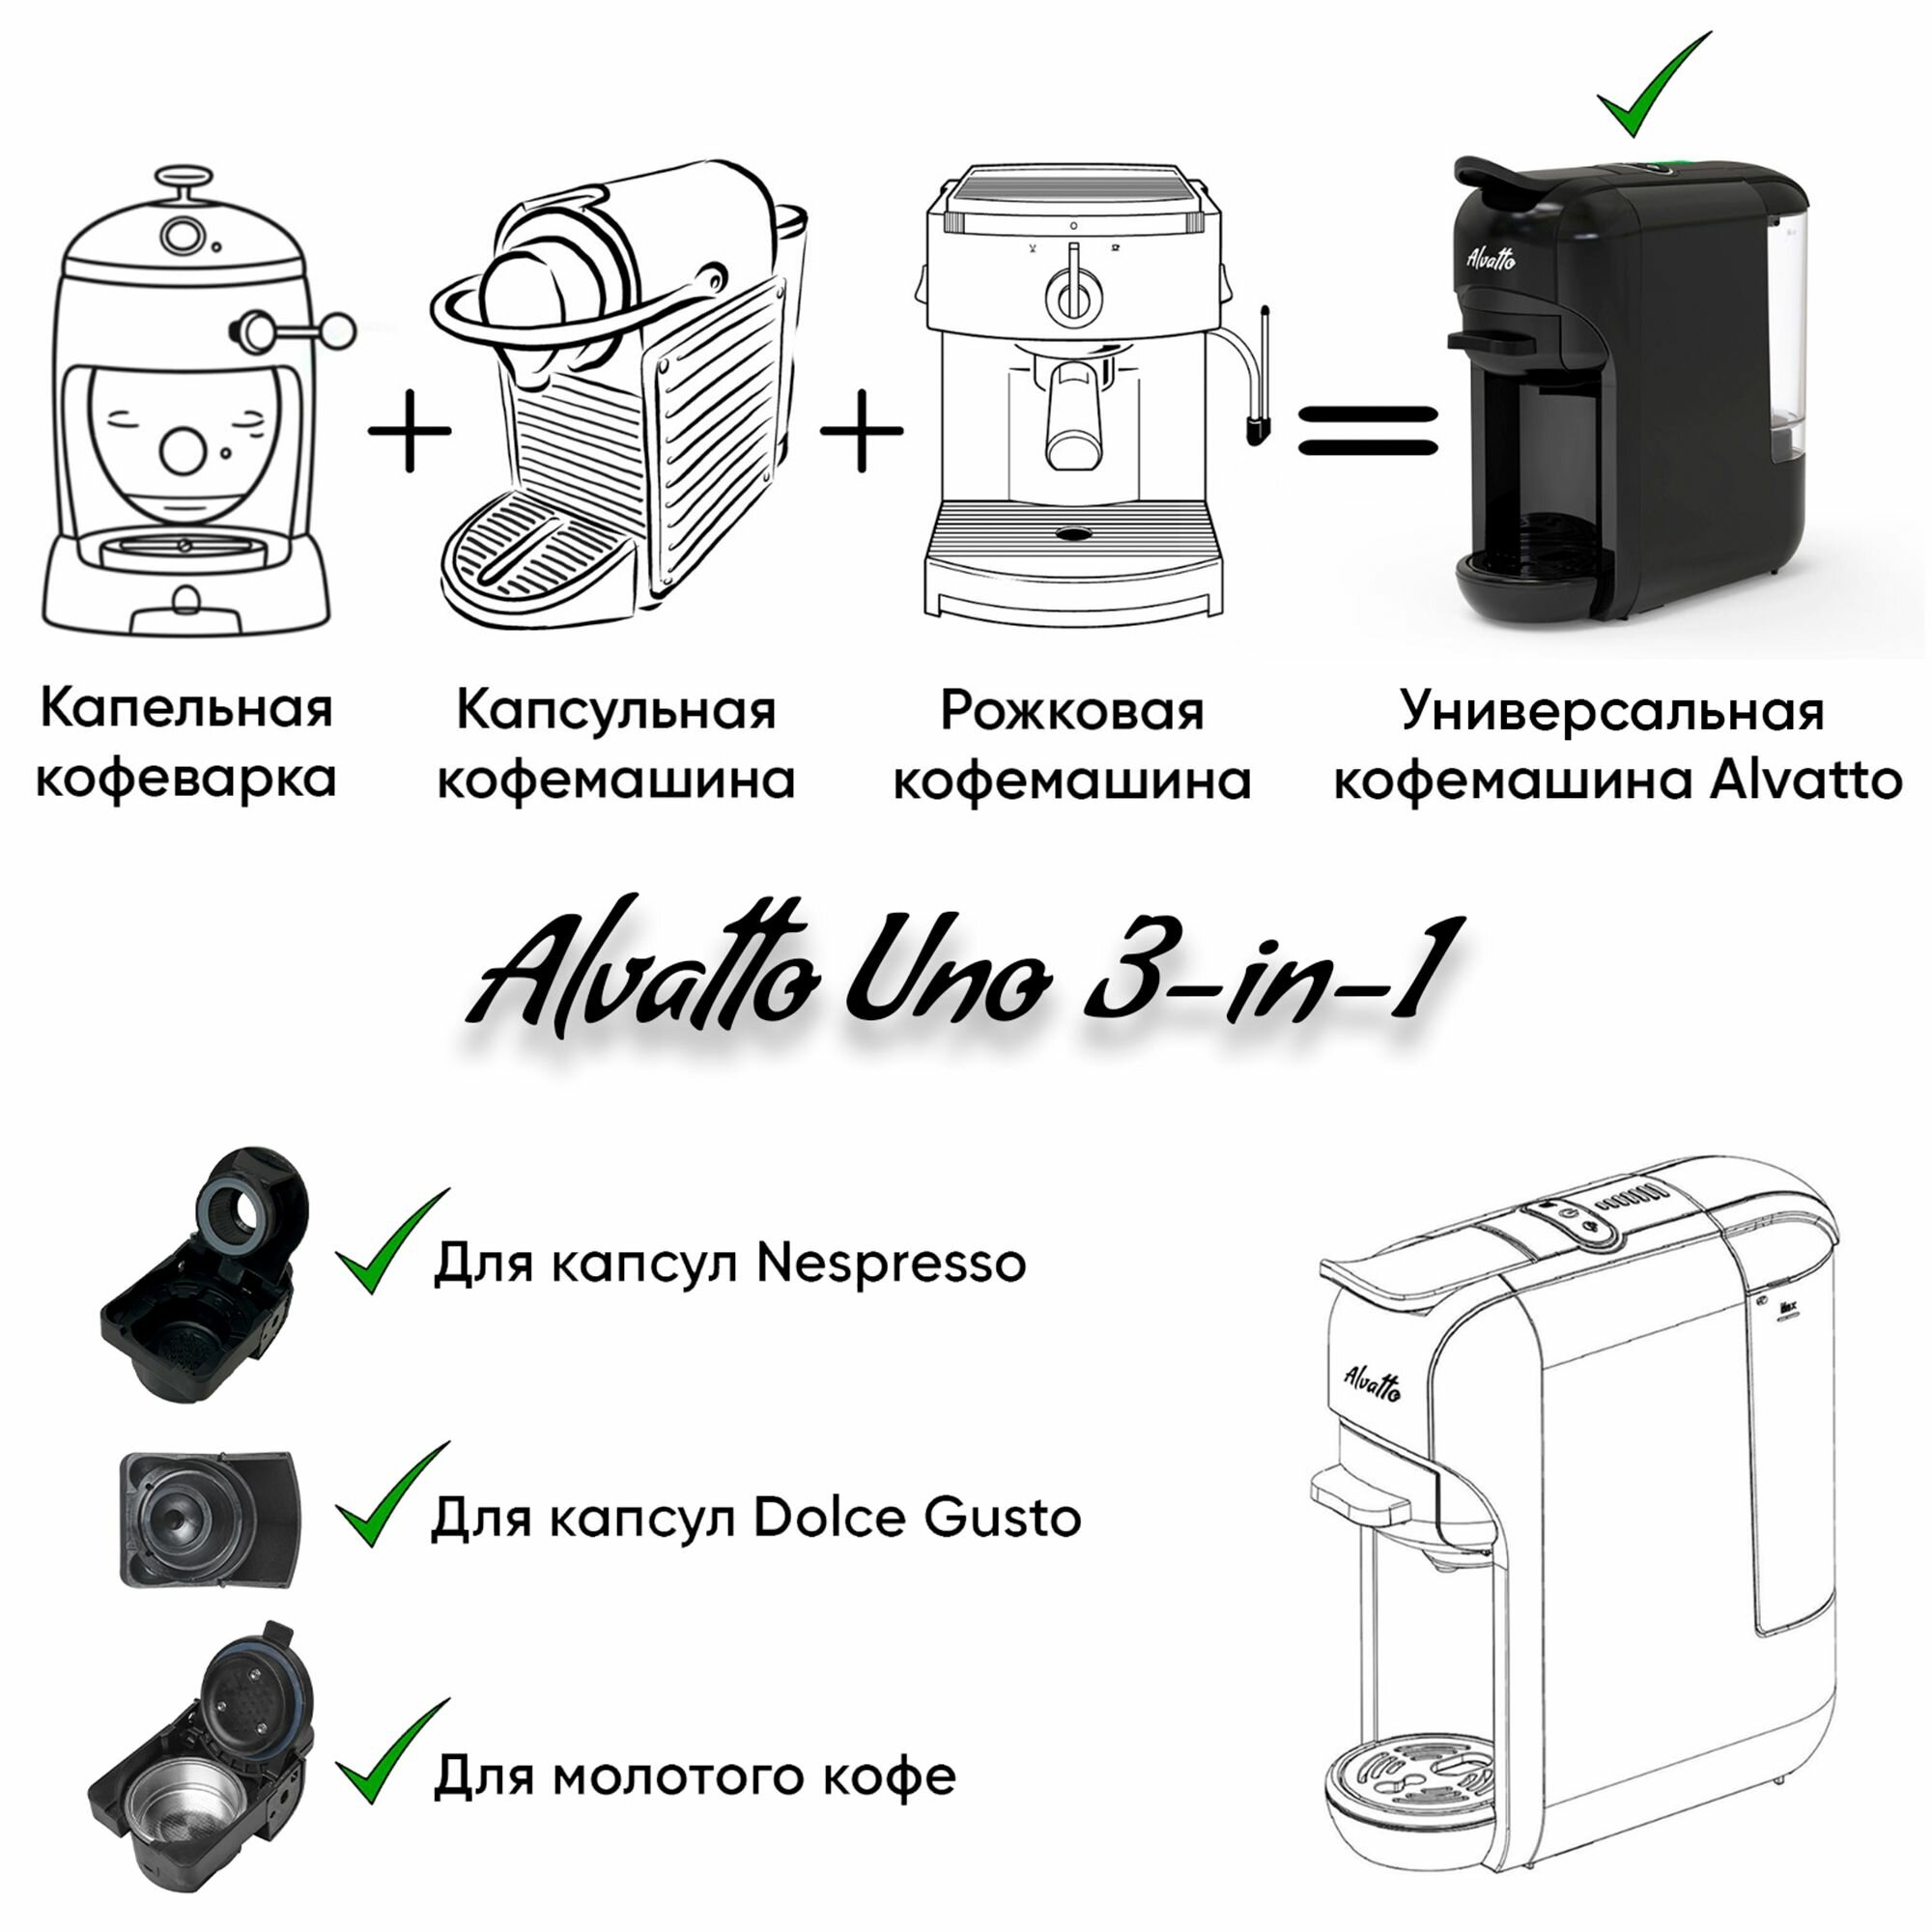 Универсальная кофемашина Alvatto Uno 3-в-1 с адаптерами для капсул Nespresso, Dolce Gusto и молотого кофе / 1450W - фотография № 13